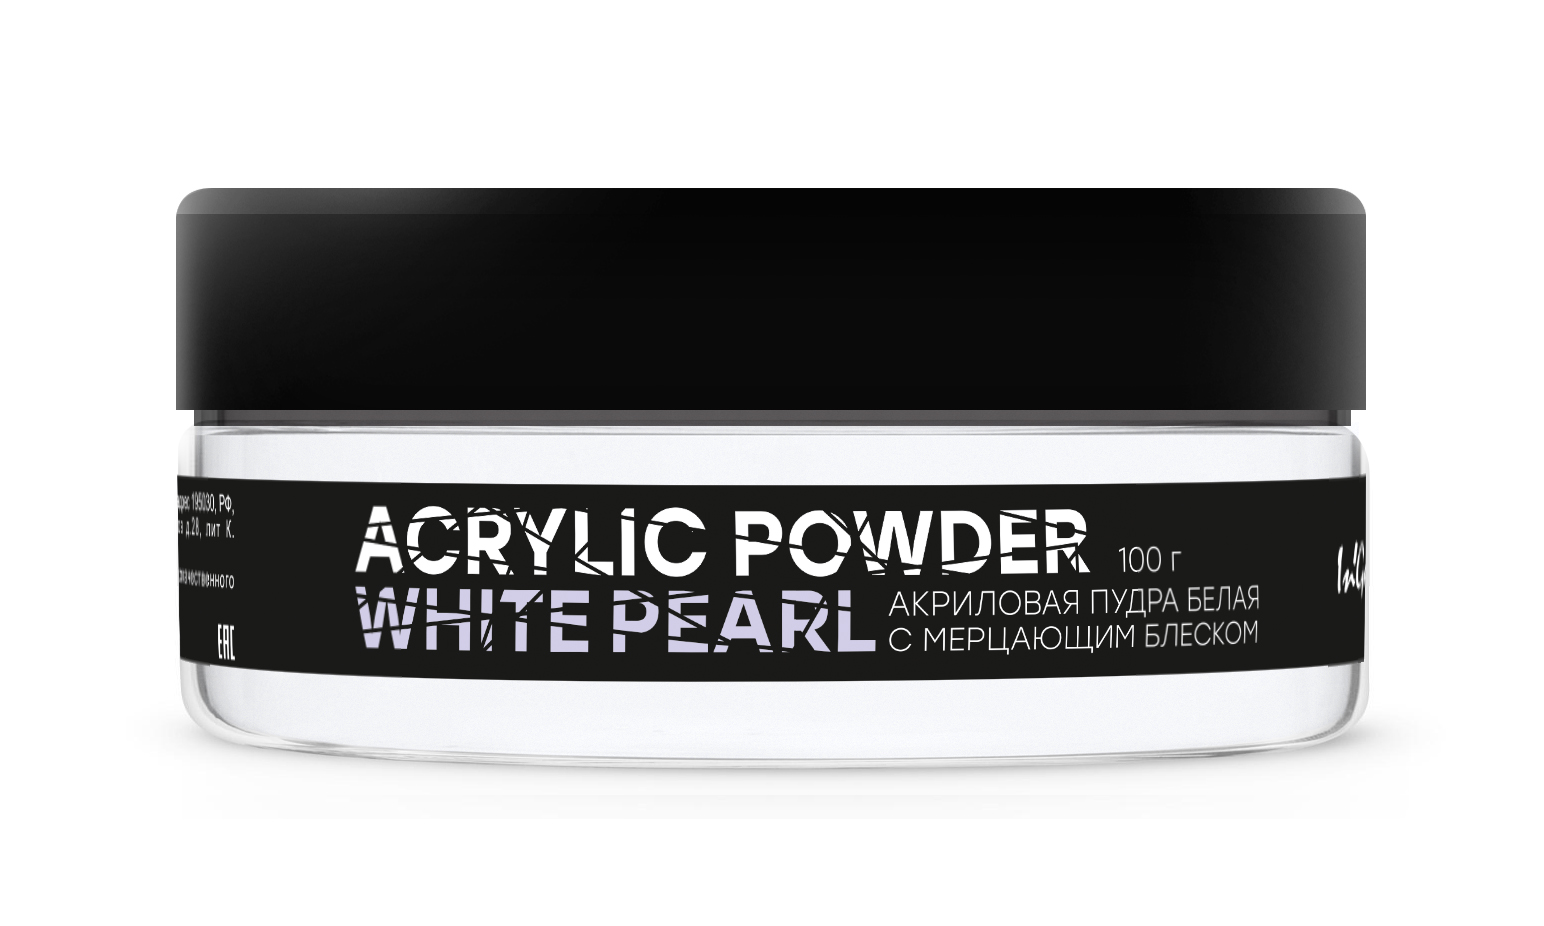 Акриловая пудра белая с мерцанием Acrylic Powder Classic White Pearl, 100 г акриловая пудра белая с мерцанием acrylic powder classic white pearl 100 г